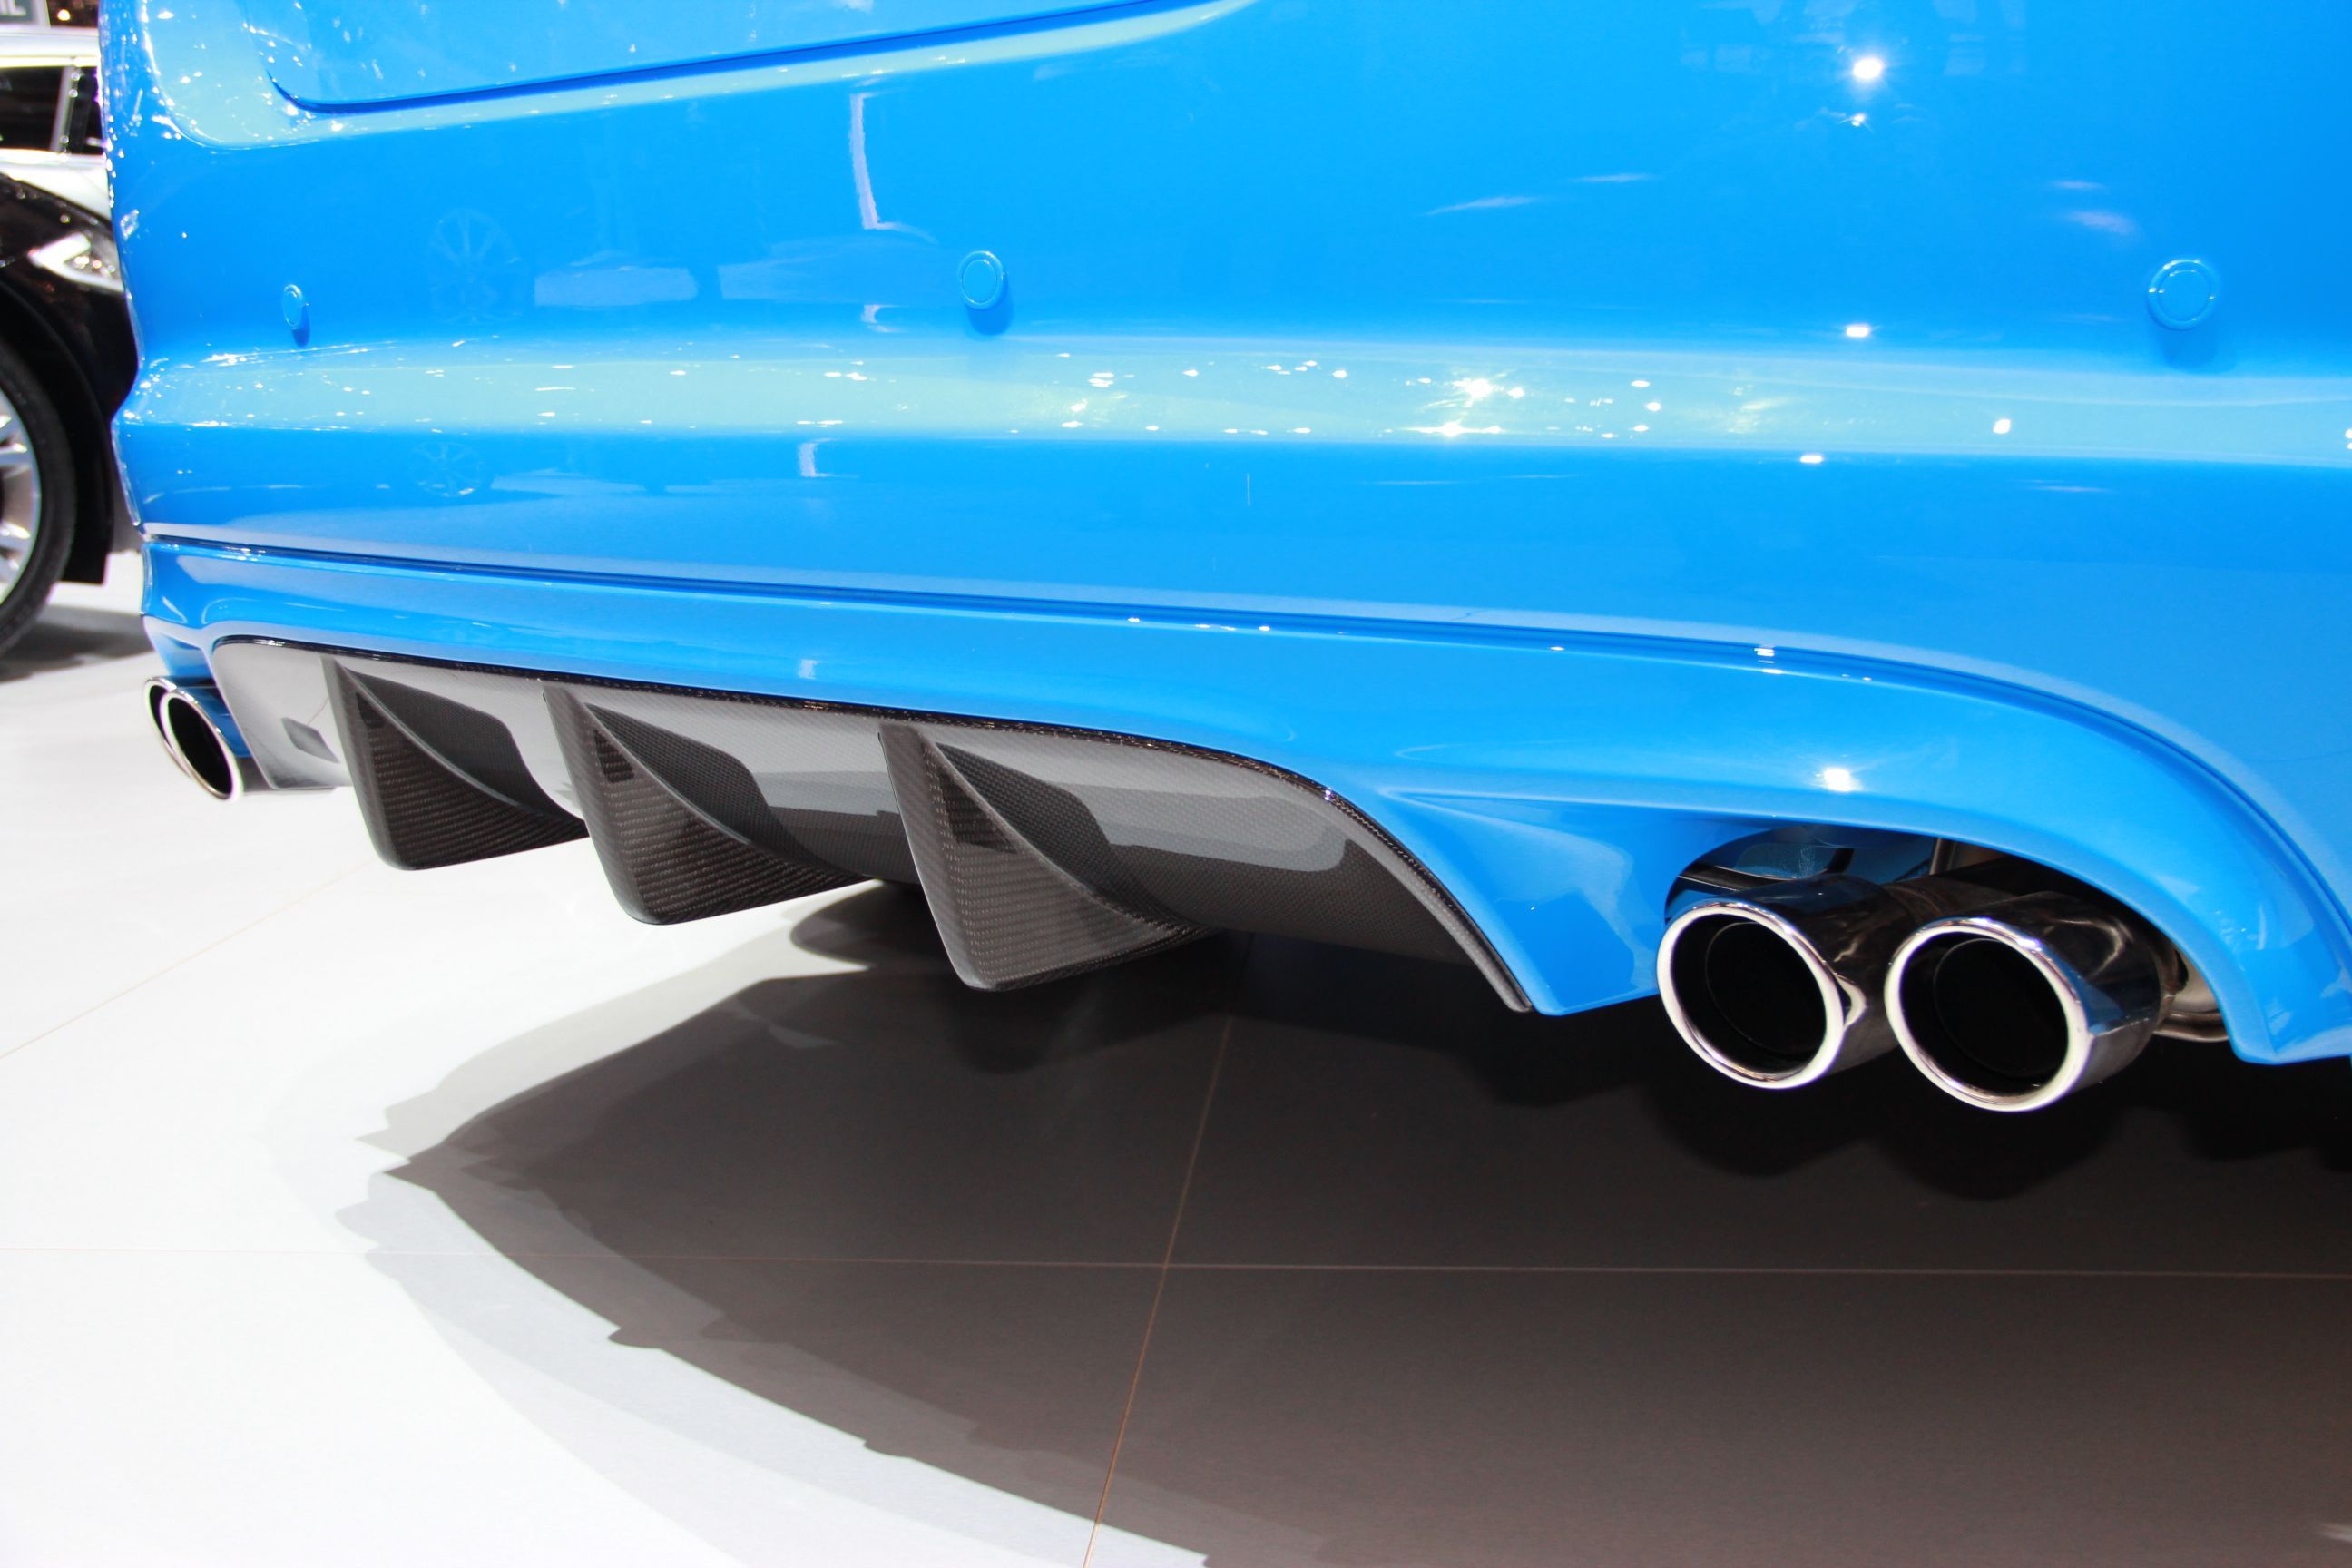 2014 Jaguar XFR-S